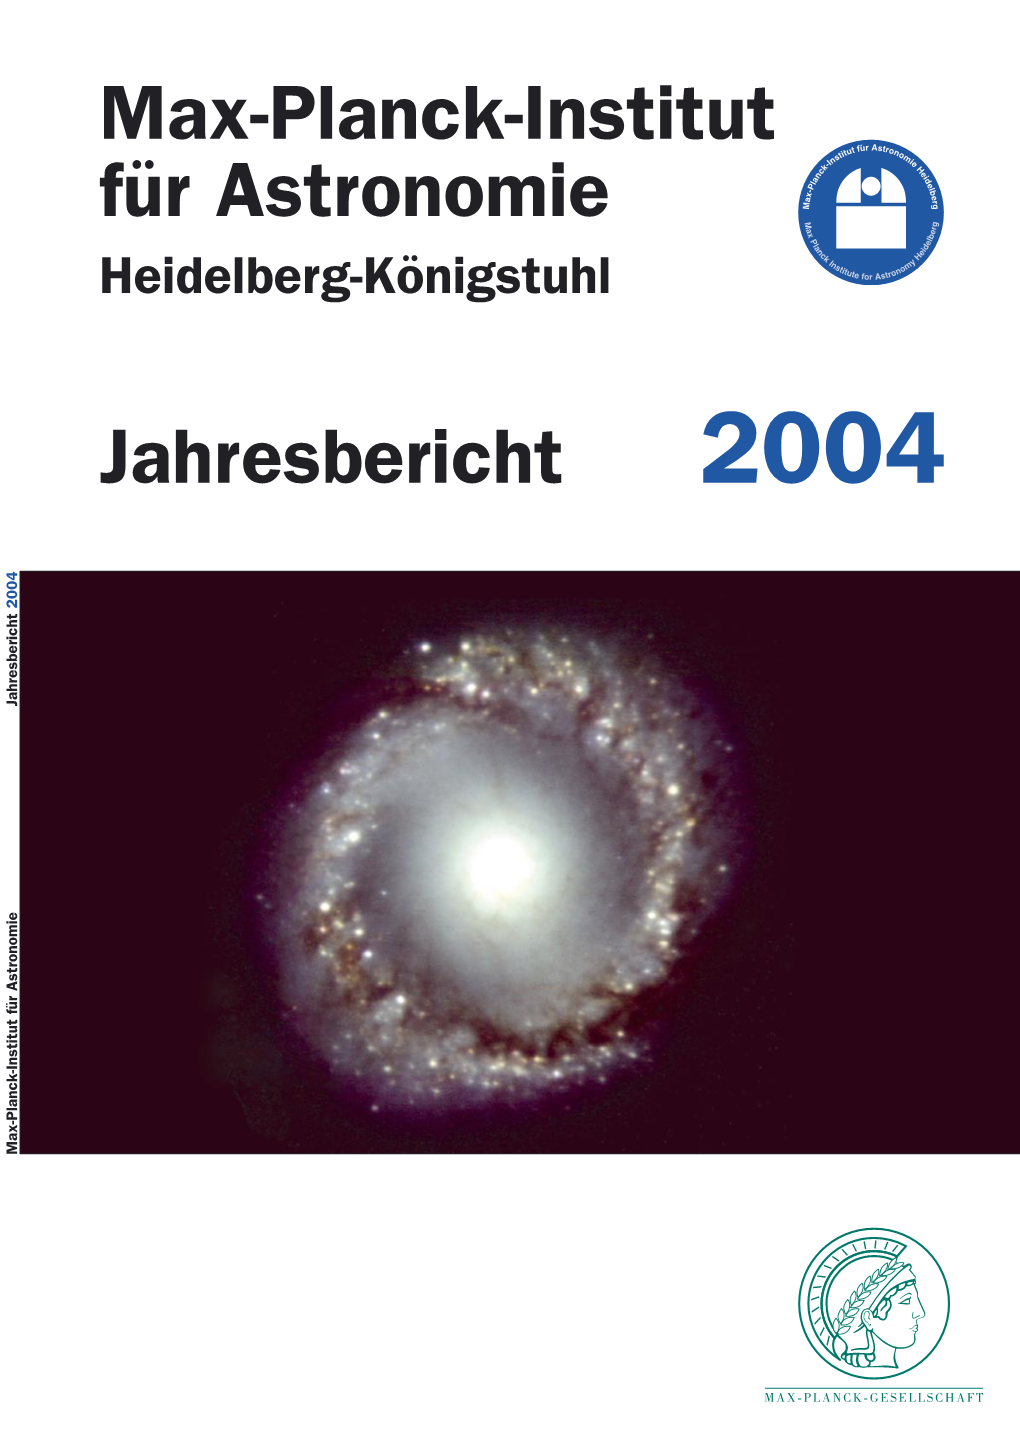 Die Max-Planck-Gesellschaft War V.1 Die Einweihung Des Large Binocular Telescope 103